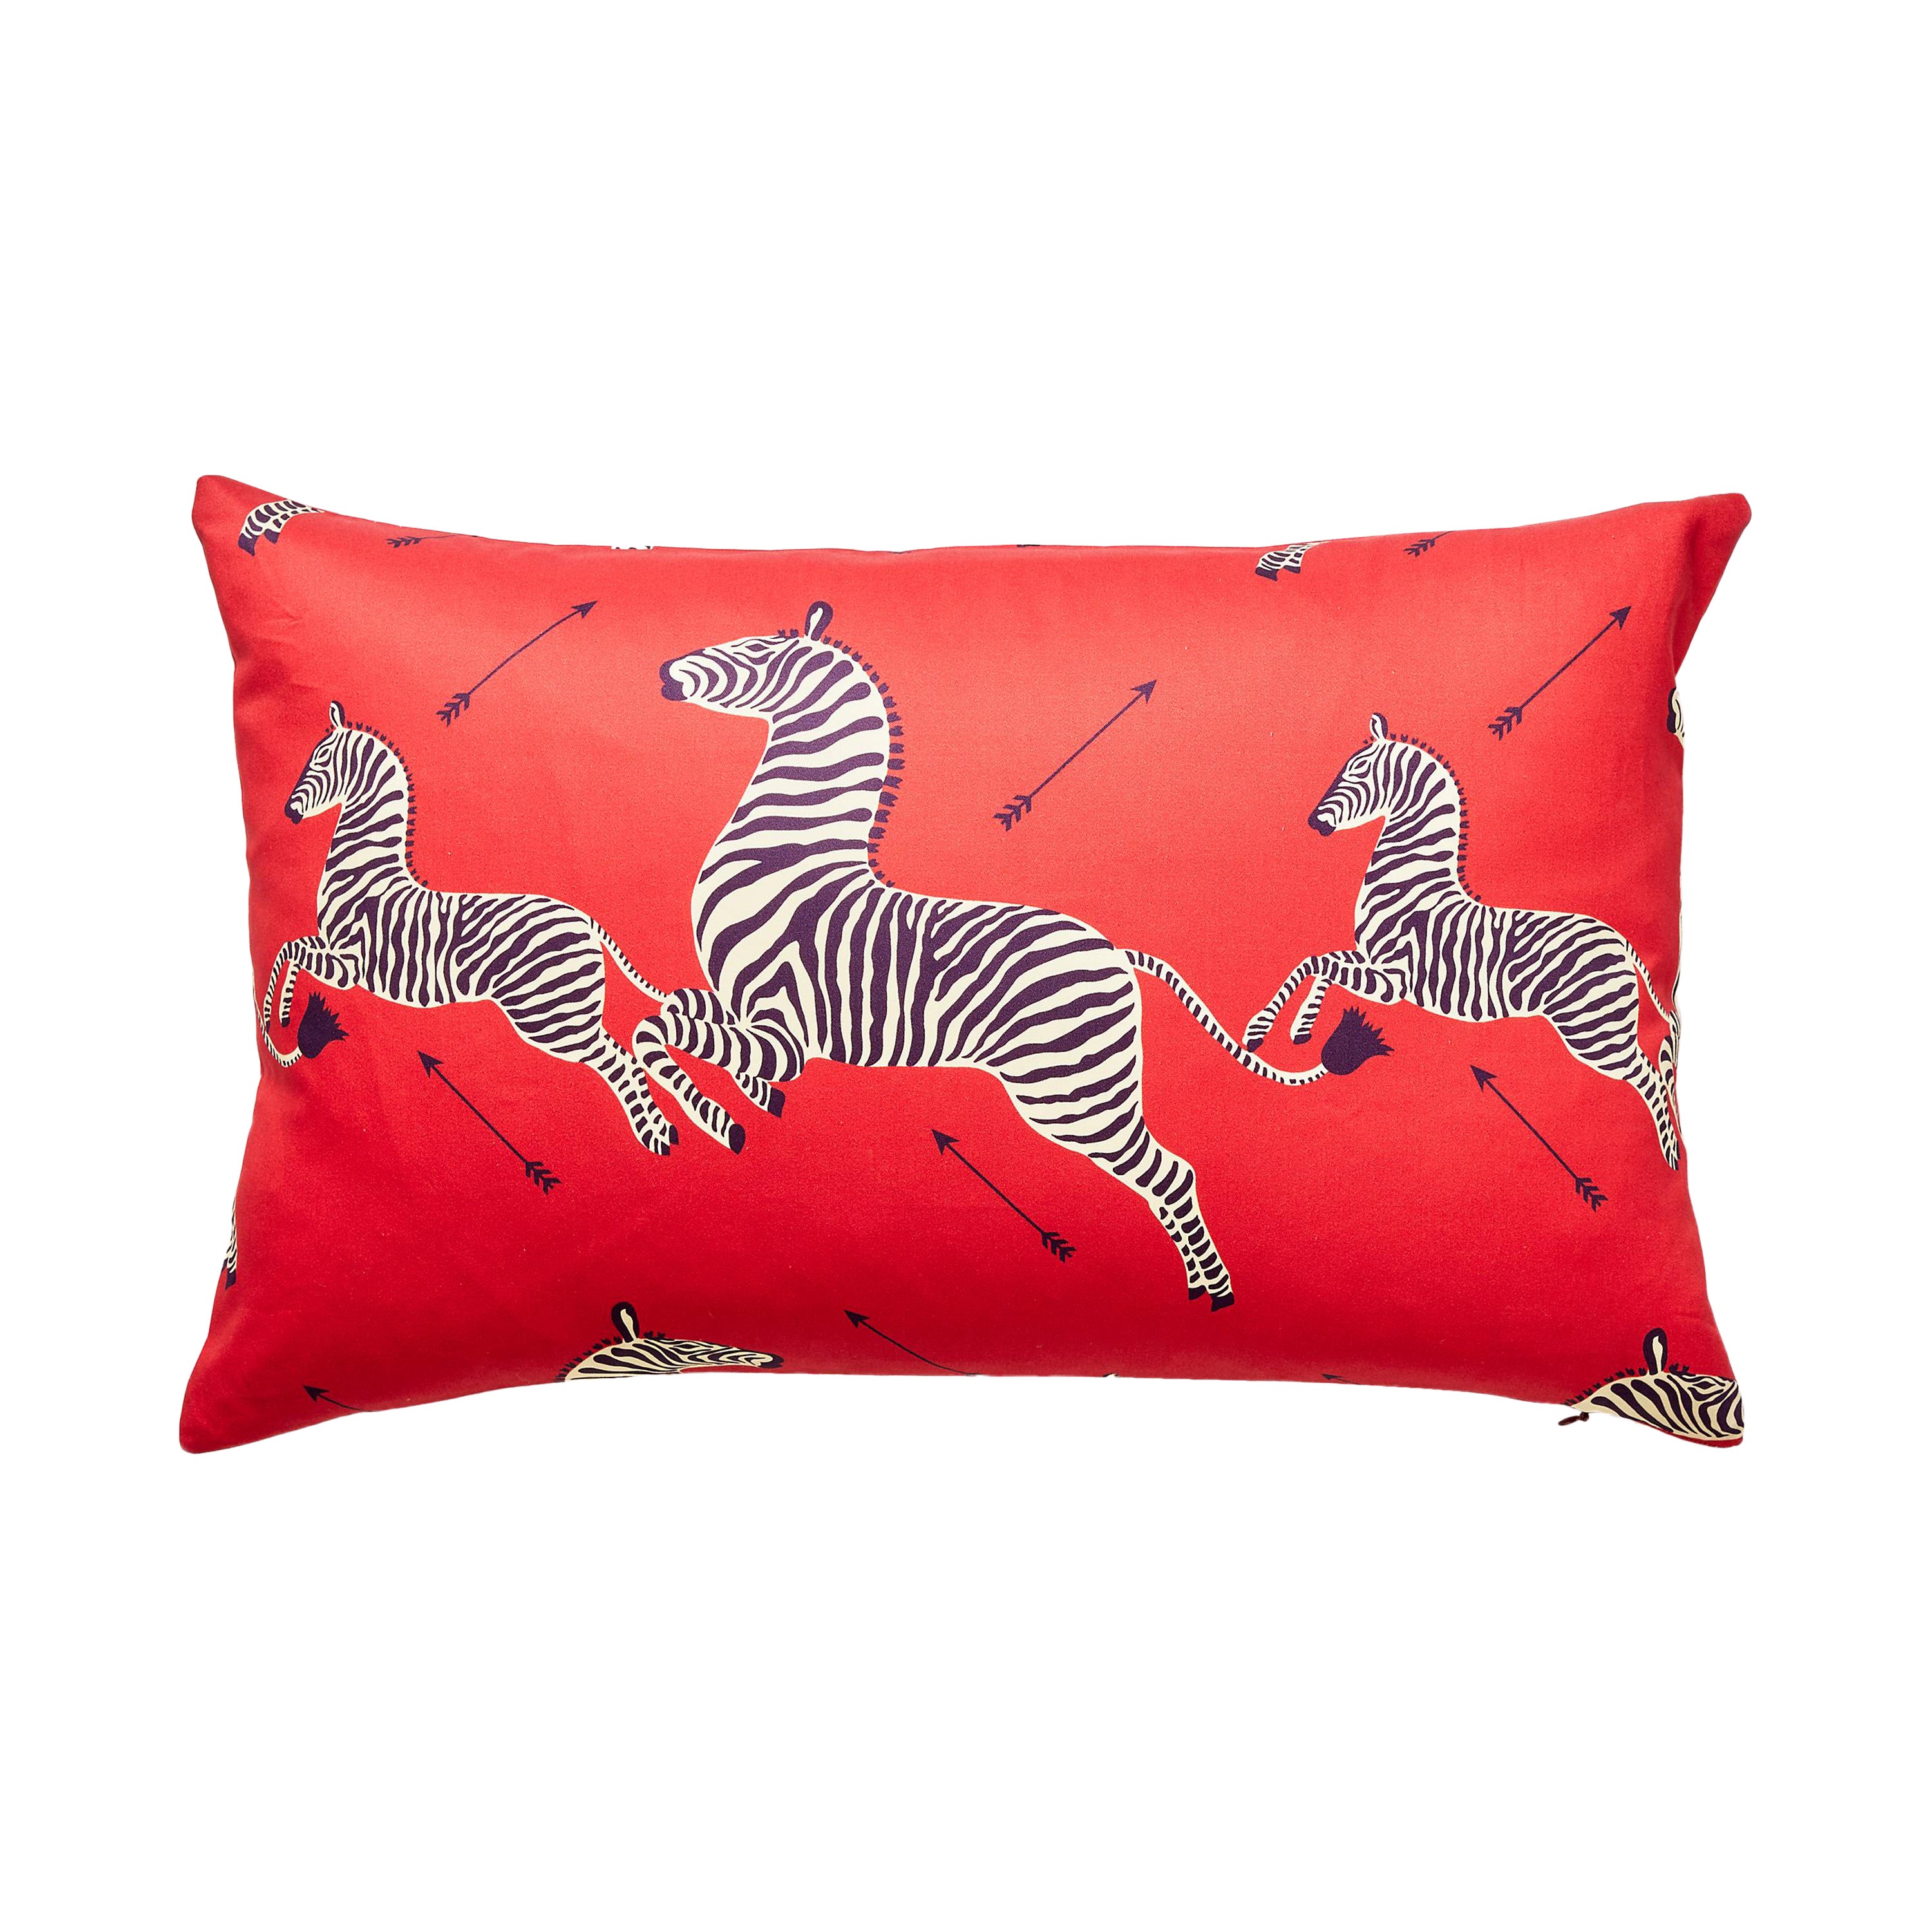 Zebras Petite Lumbar Pillow For Sale